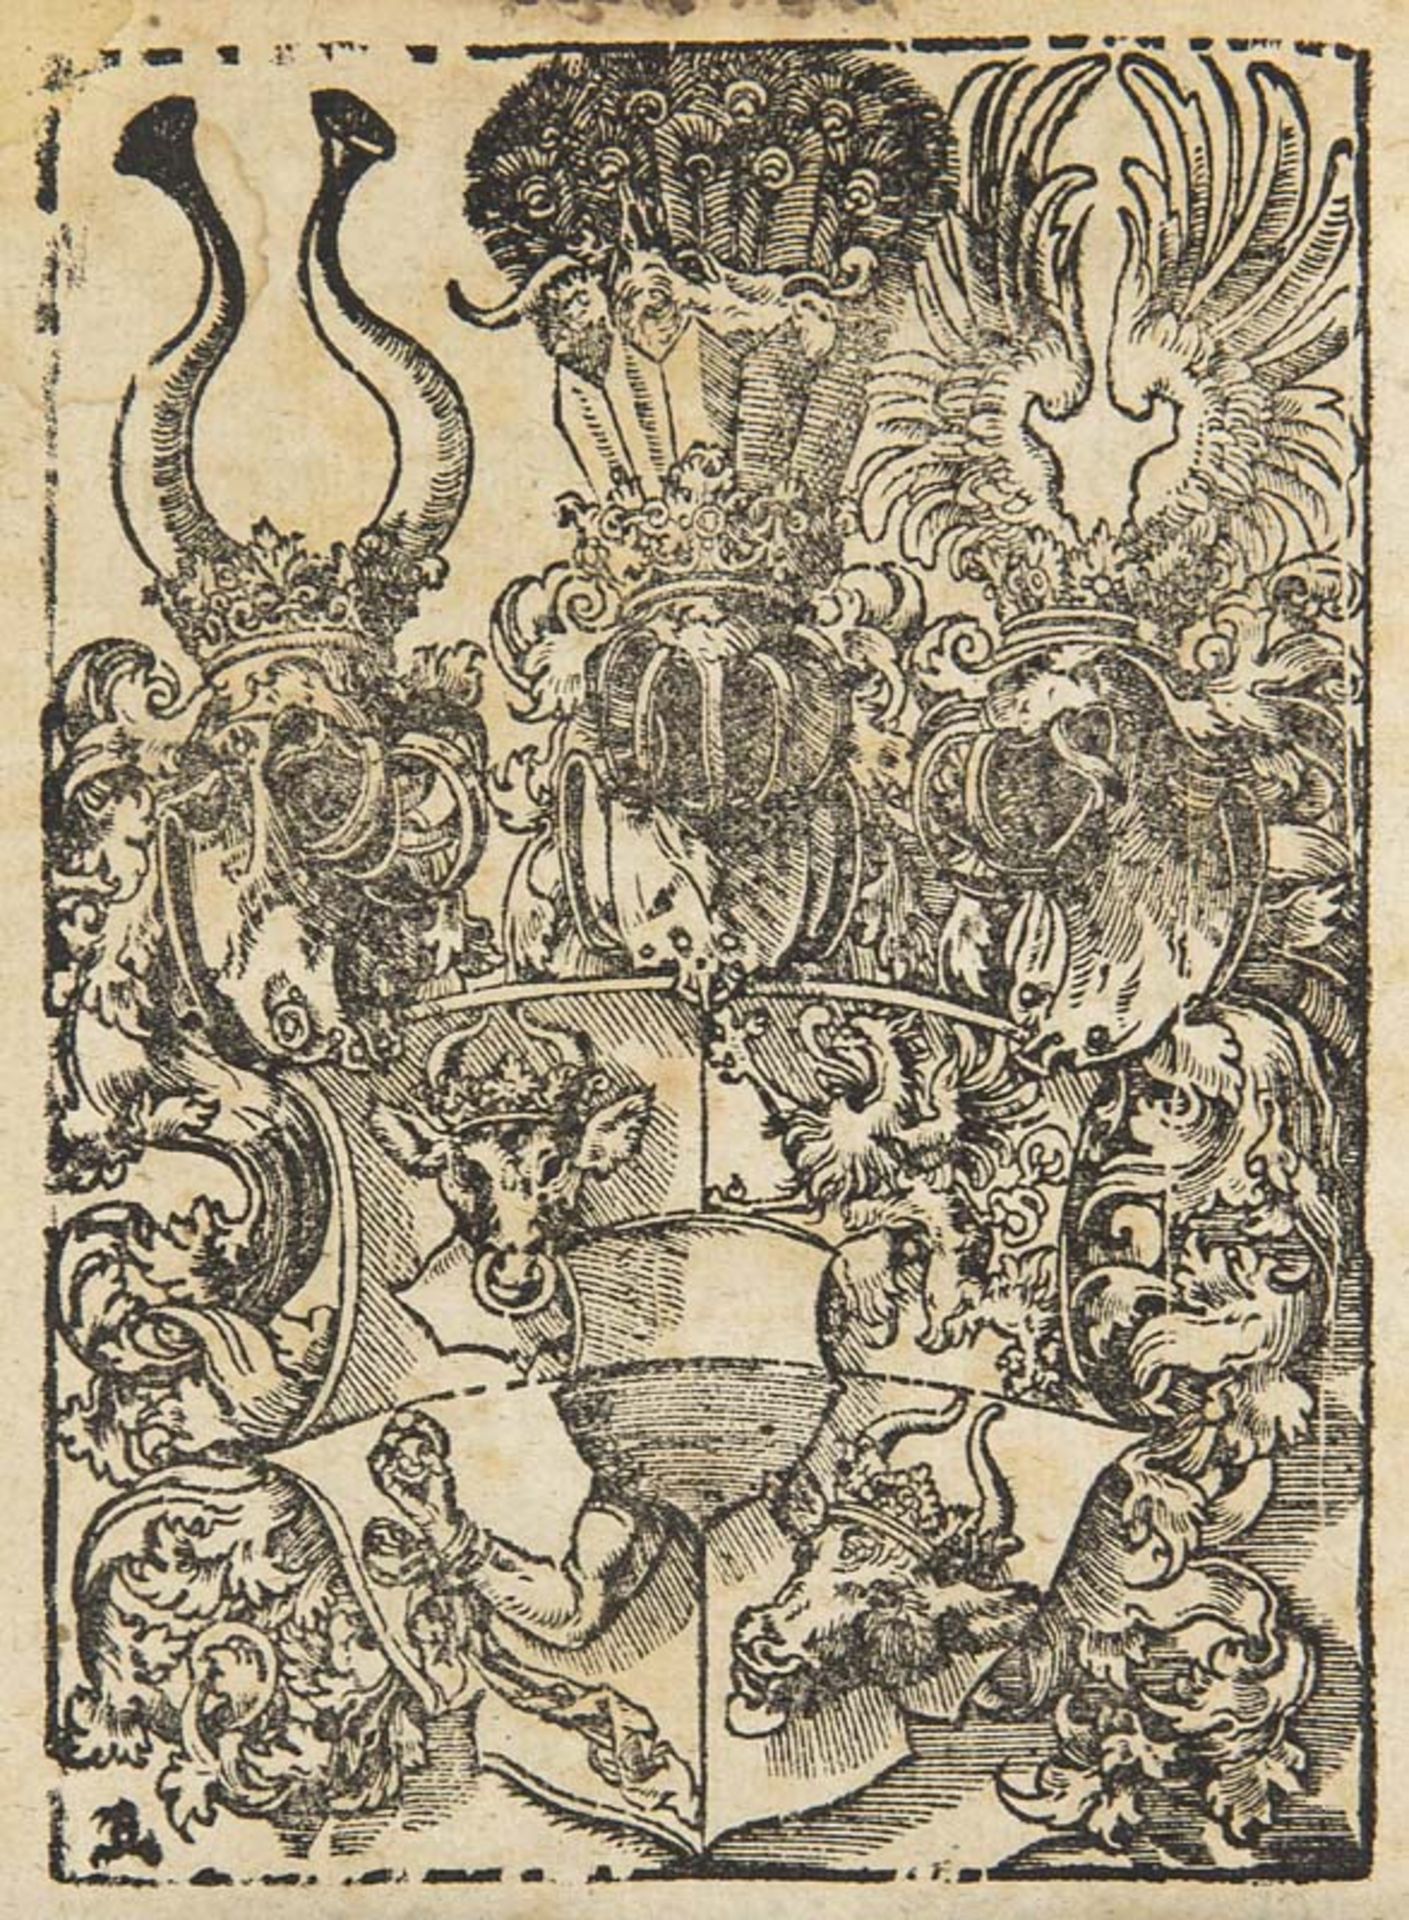 Mecklenburg - - Assecuration unnd andere Reverse de annis 1572 und 1621 von den regierenden